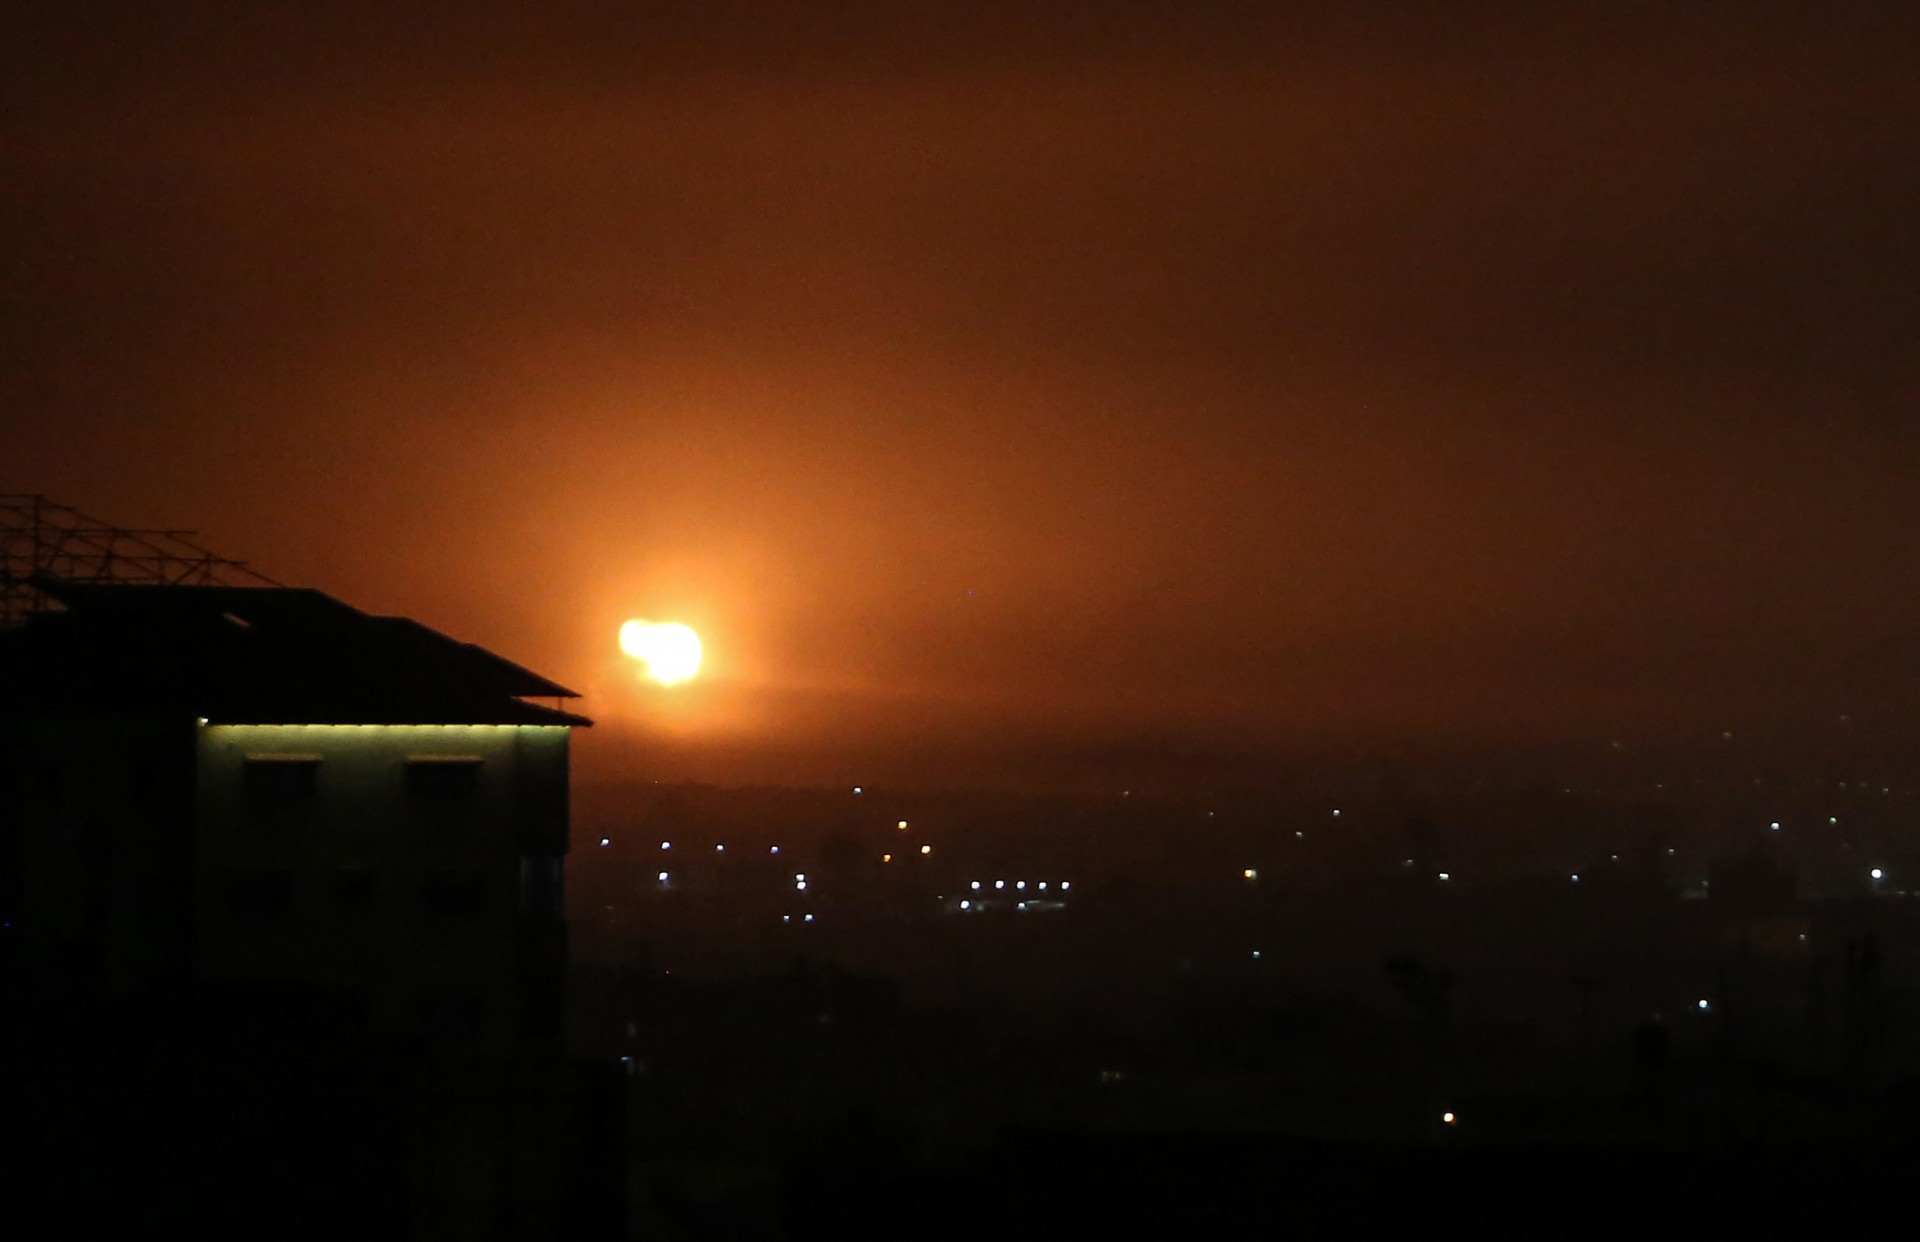 Uma foto tirada em Rafah, no sul da Faixa de Gaza, em 16 de abril de 2021, mostra uma explosão após um ataque aéreo de Israel. - O exército israelense afirmou que os palestinos dispararam um foguete da Faixa de Gaza contra o sul de Israel, sem nenhuma morte. (Foto de SAID KHATIB / AFP) (Foto: SAID KHATIB / AFP)